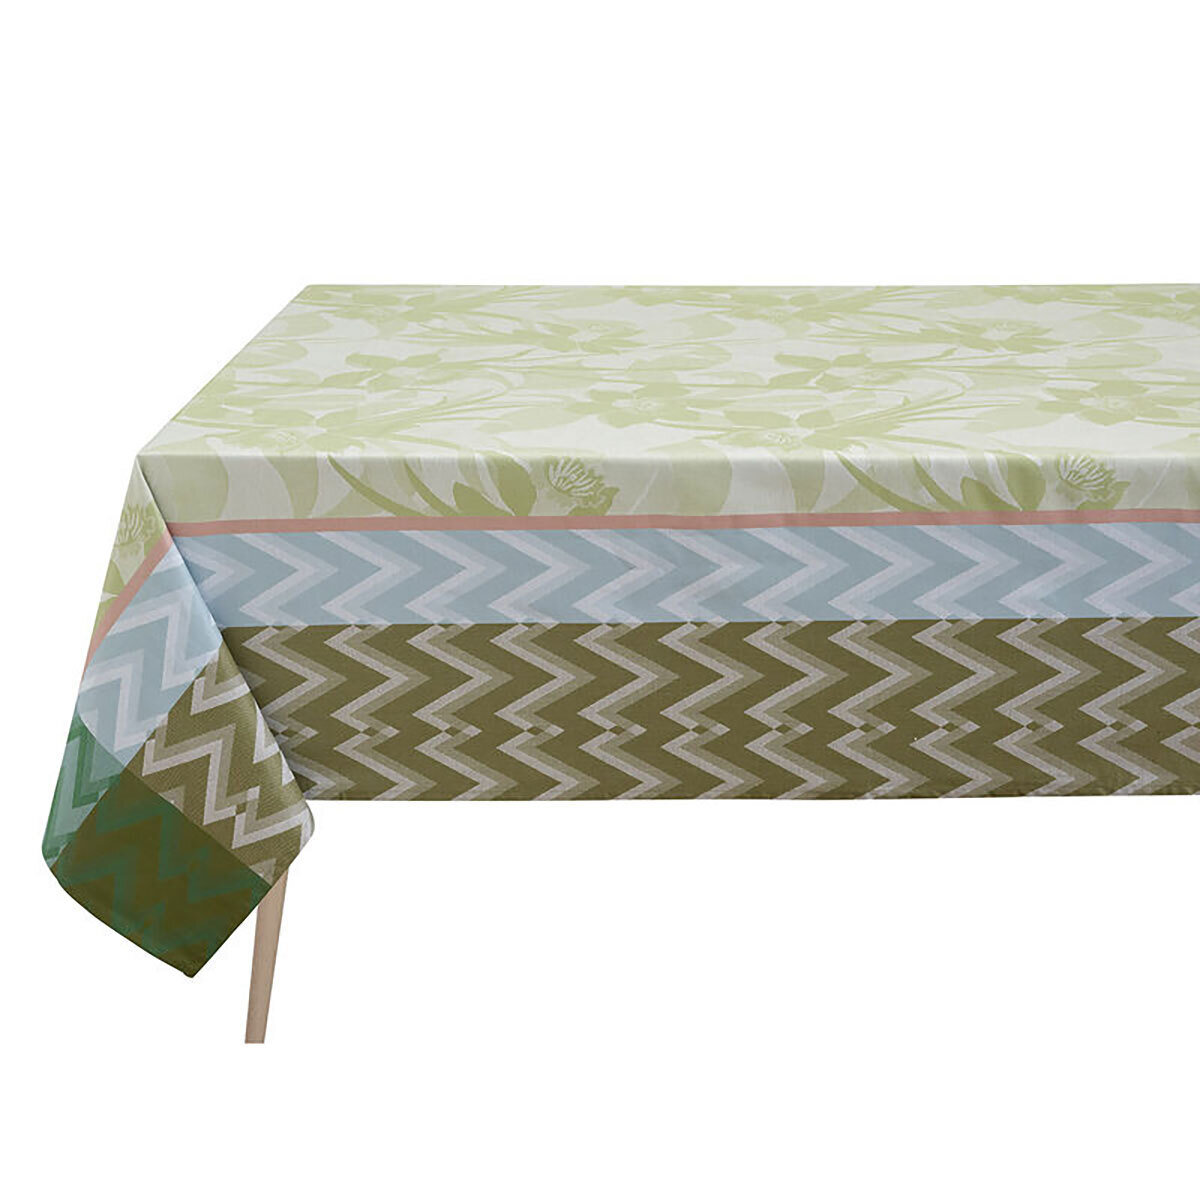 Le Jacquard Francais La Vie En Vosges Green Coated Tablecloth 69 x 98 Inch 27485